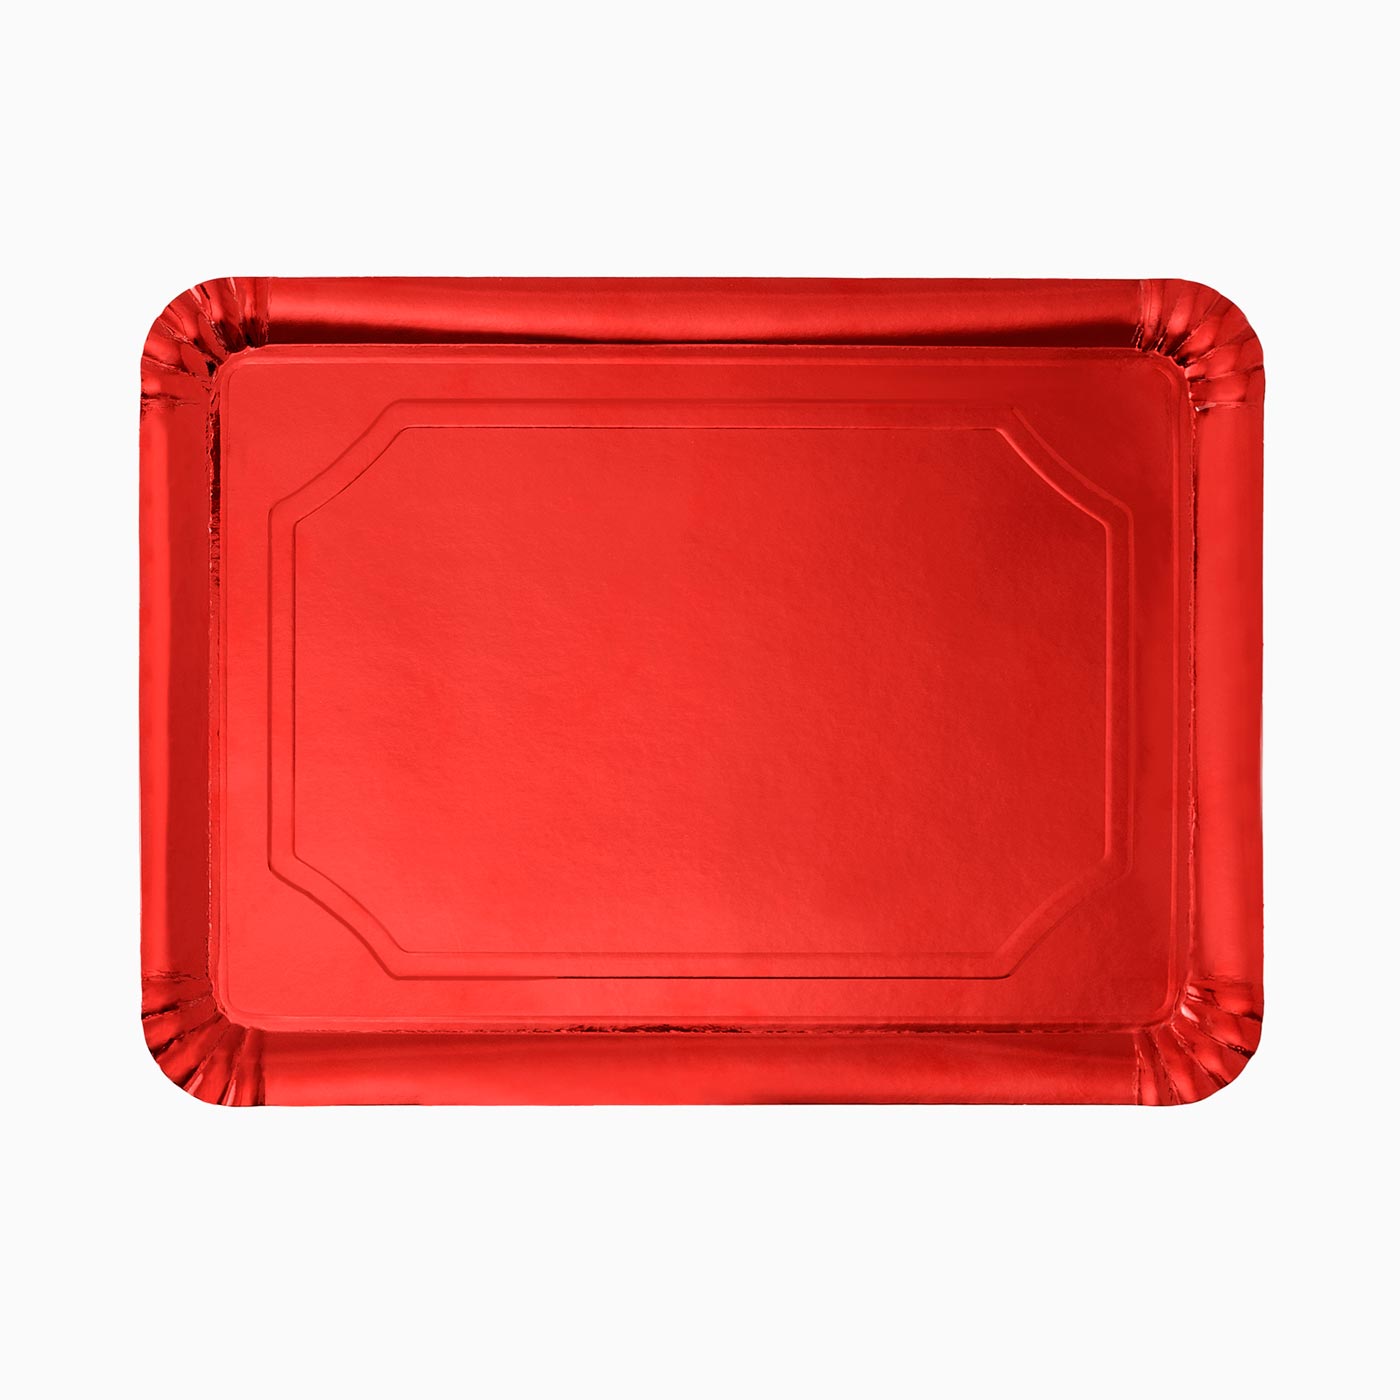 25 x 34 cm rote rechteckige Tablett